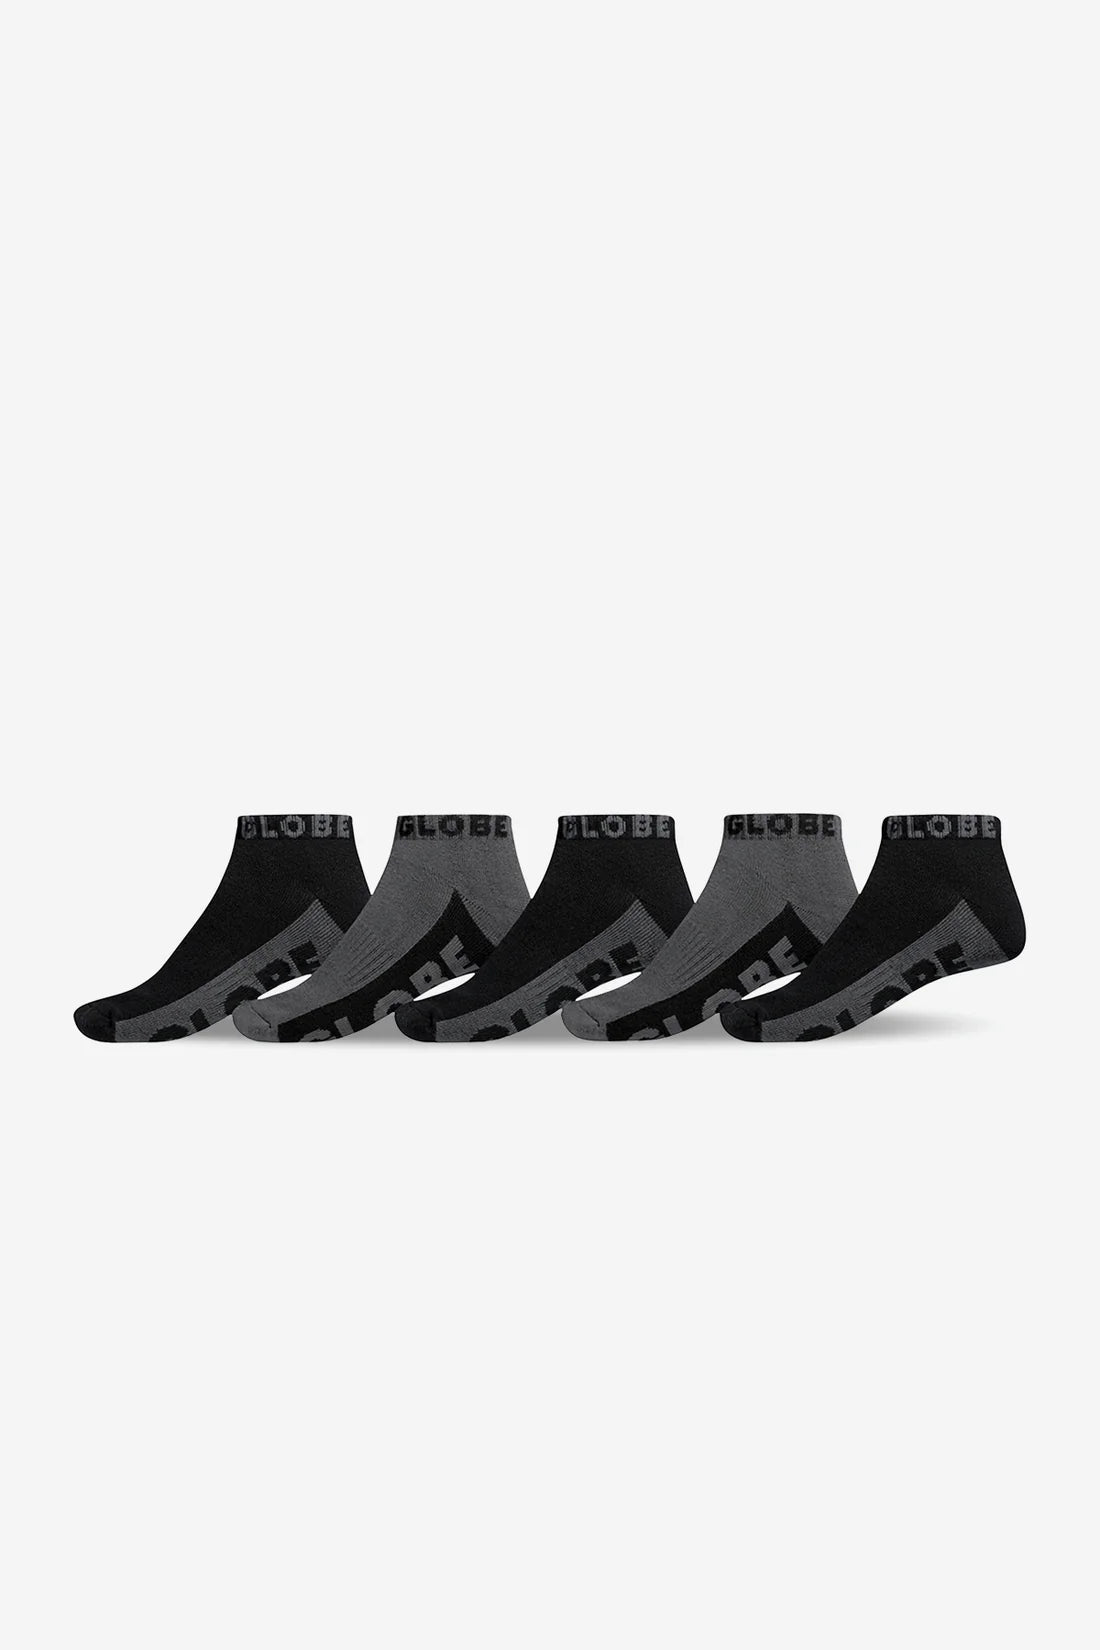 B/G Ankle Sock 5 Pack